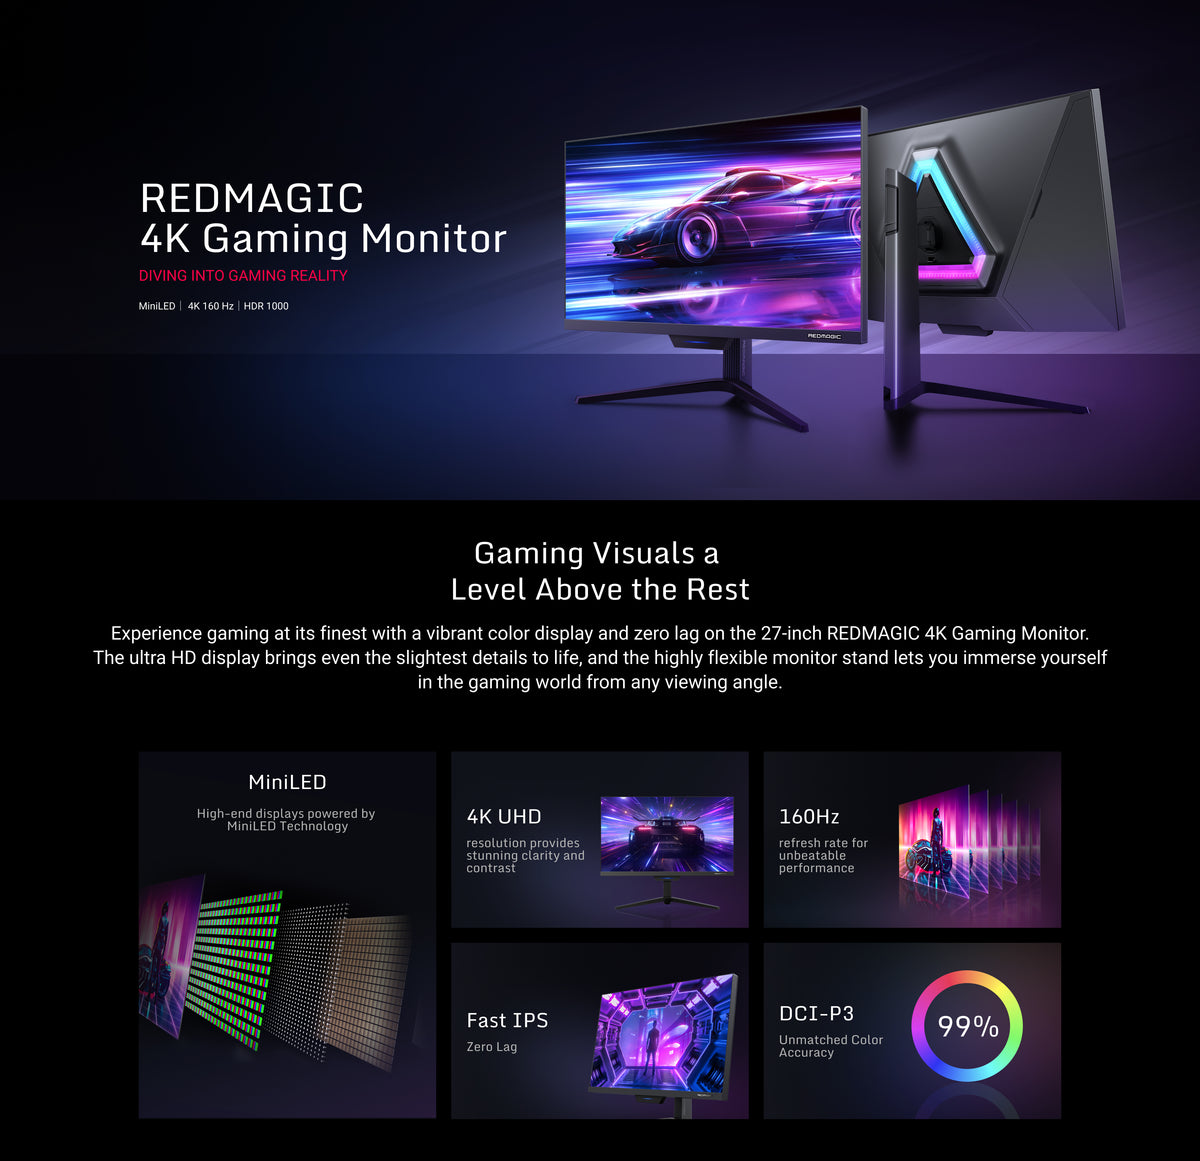 REDMAGIC 4K Gaming Monitor - REDMAGIC (US and Canada)